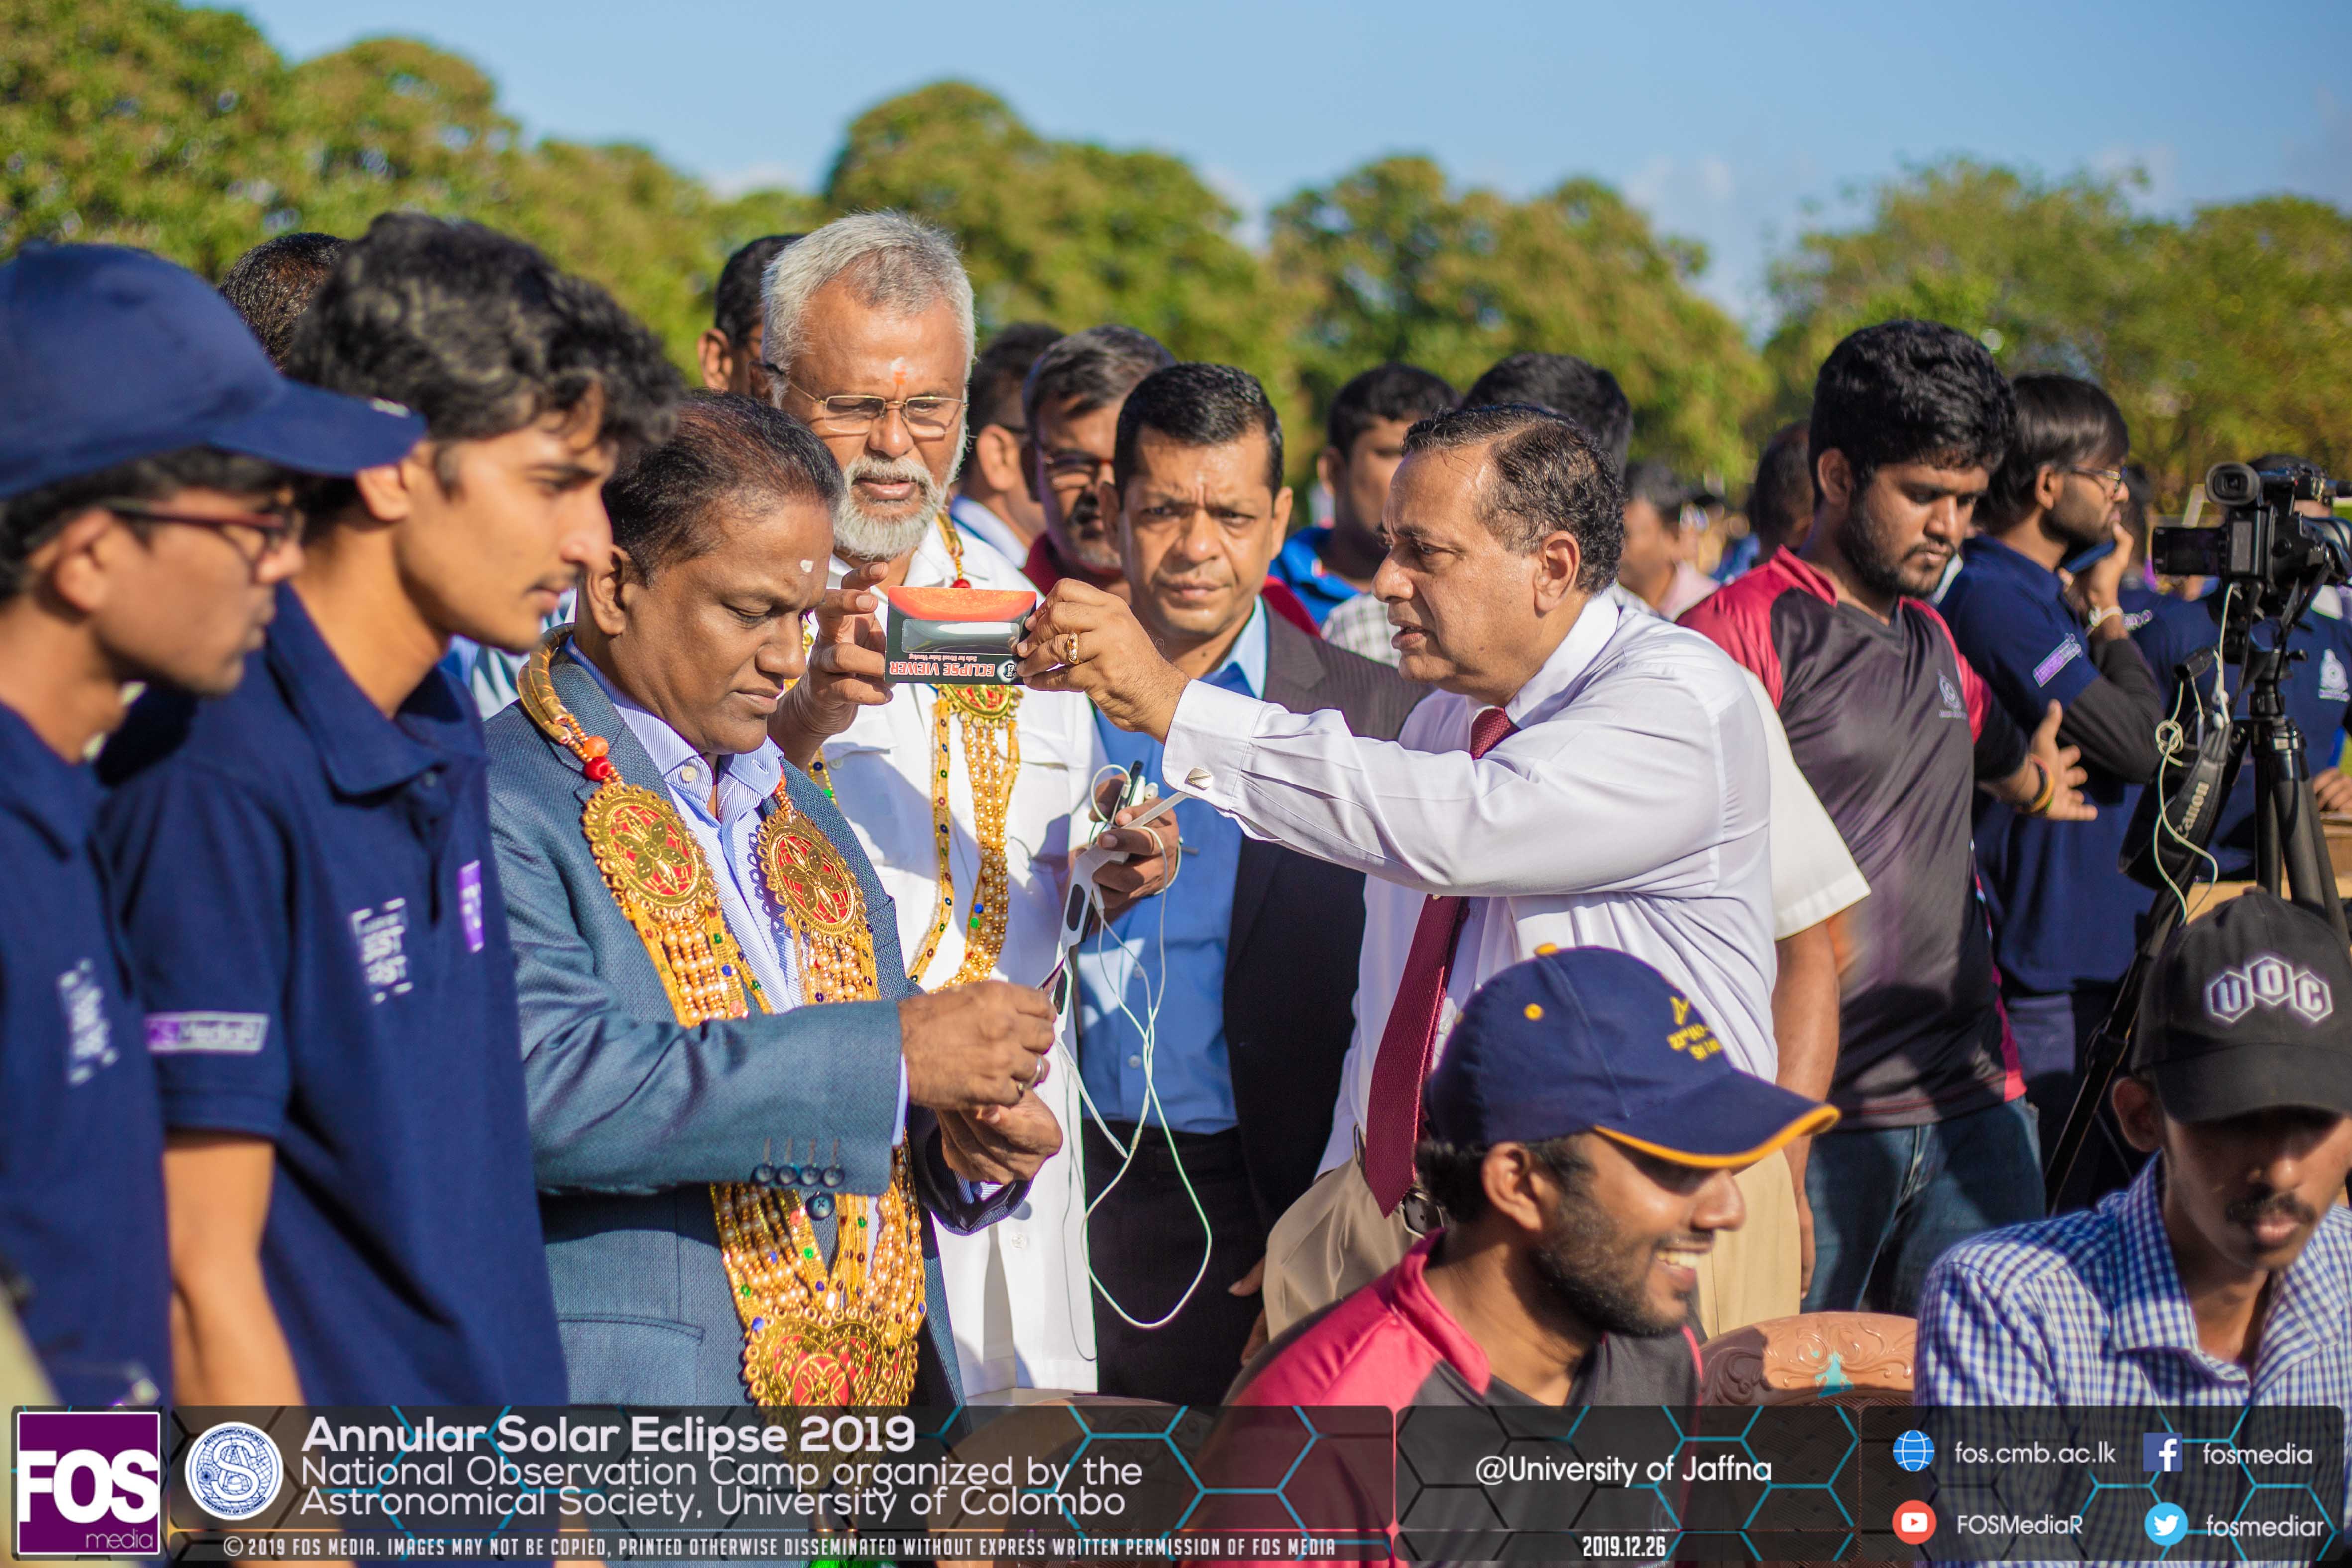 Mr. Thilanga Sumathipala, Mr. Douglas Devananda and Prof. Jayarathne witness the ring of fire